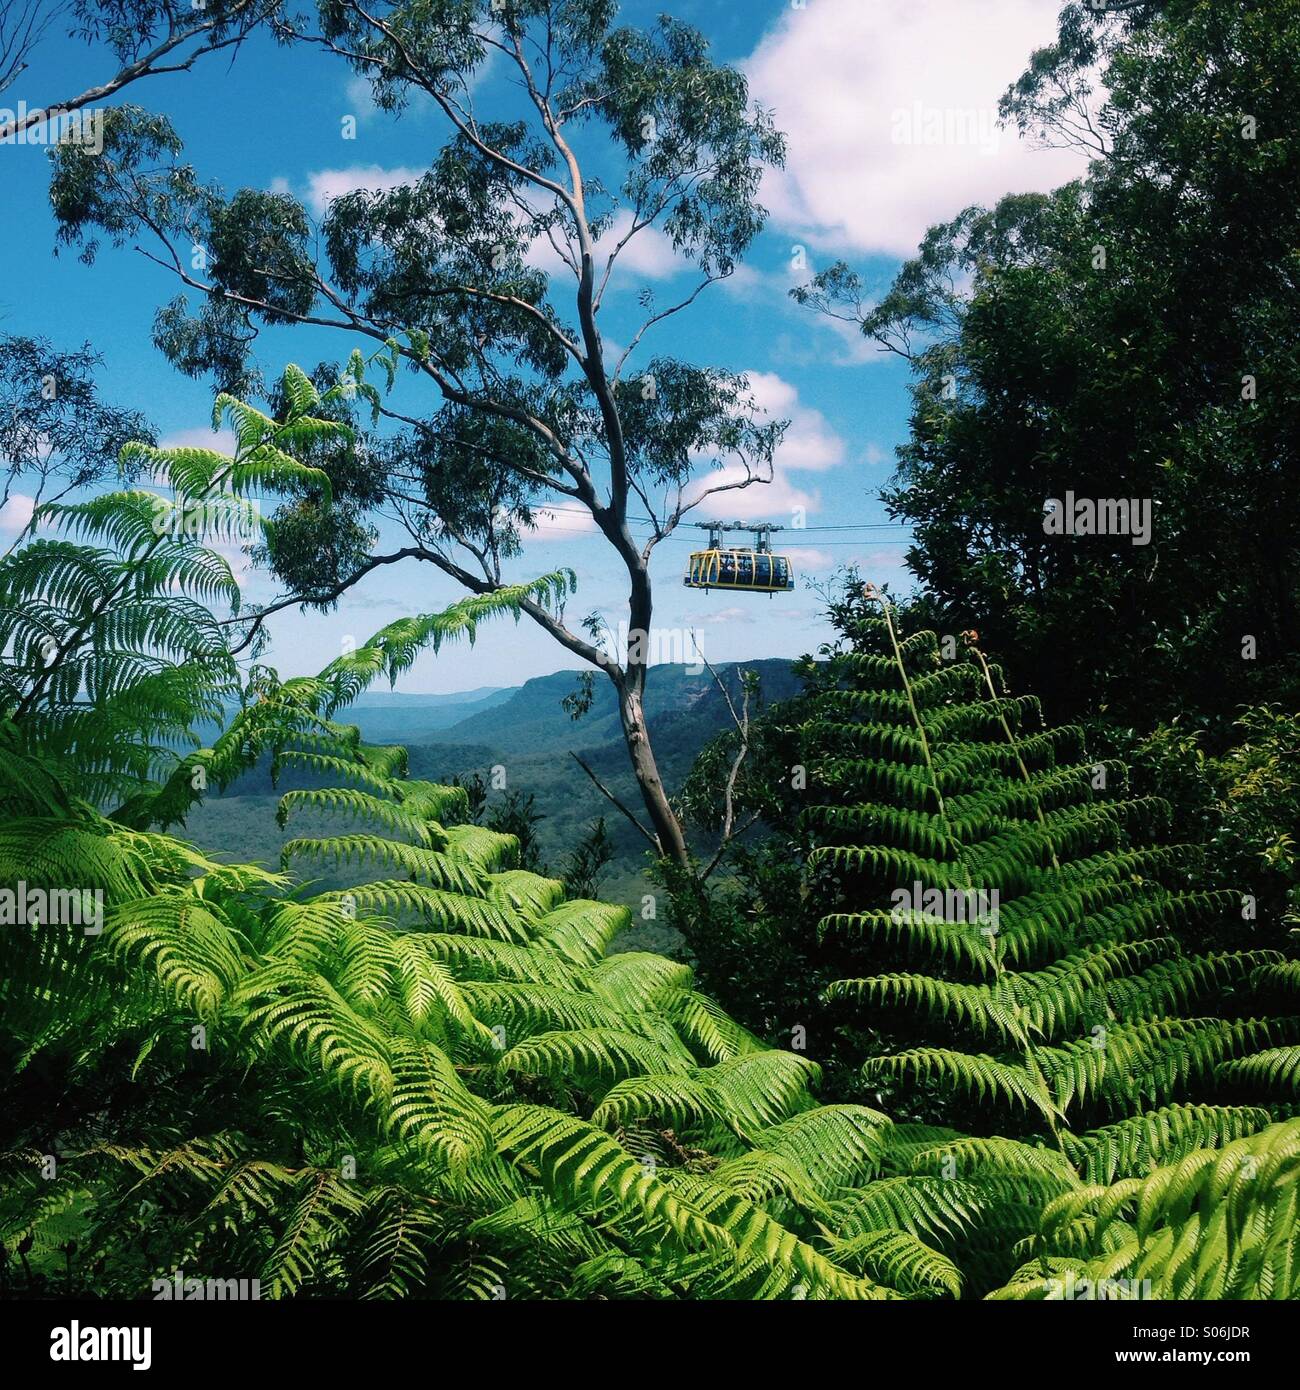 Blue Mountains, Australia Stock Photo